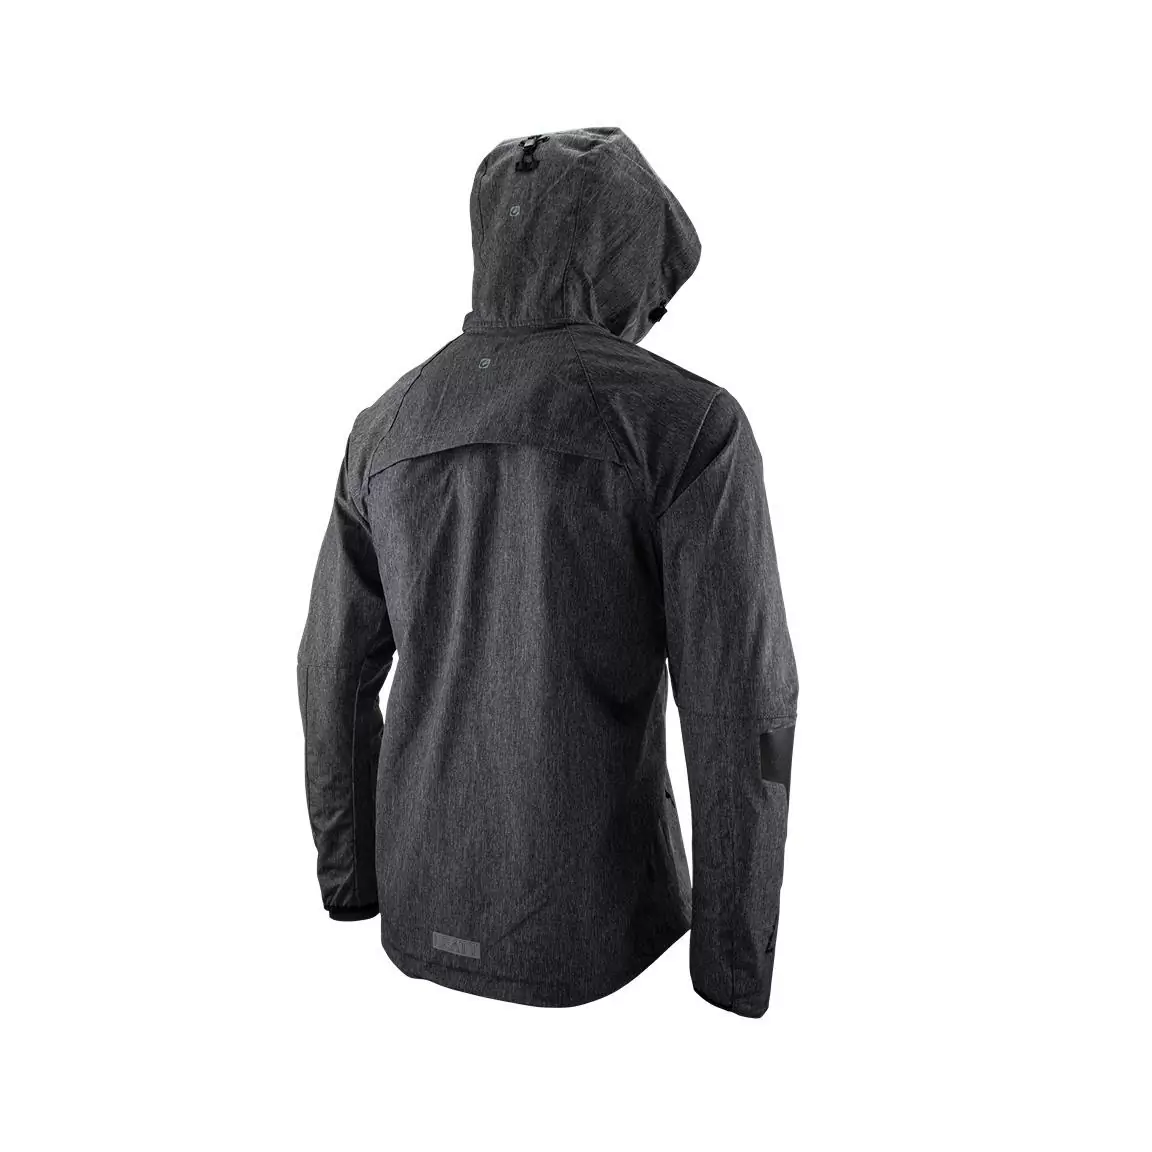 Mtb Hydradri 4.0 waterproof jacket Black size M #3